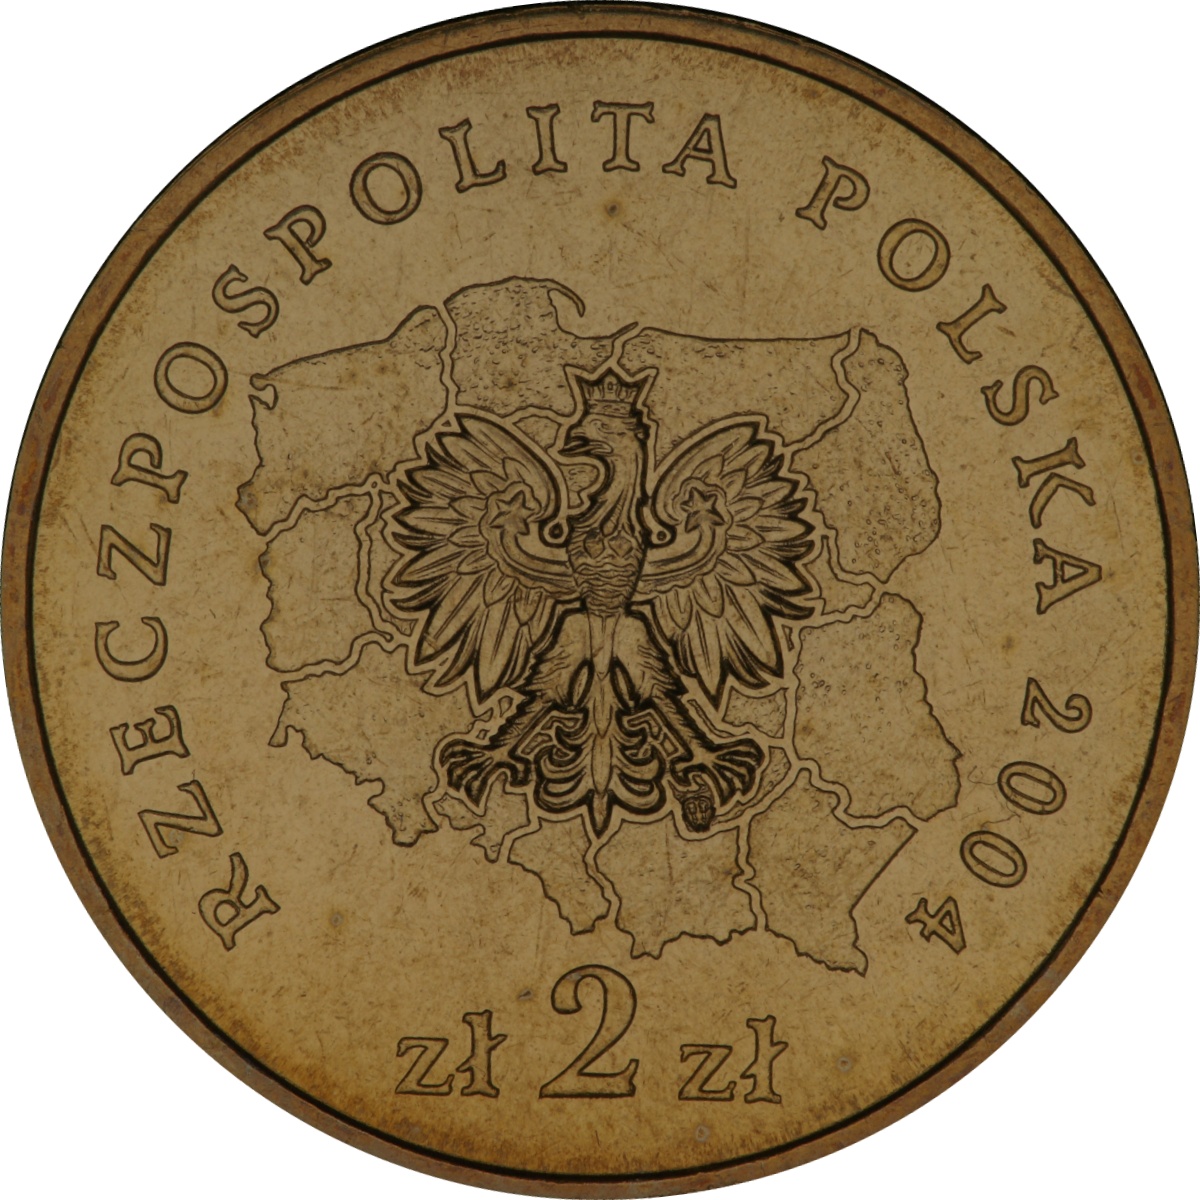 2zl-okolicznosciowe-wojewodztwo-malopolskie-awers-monety